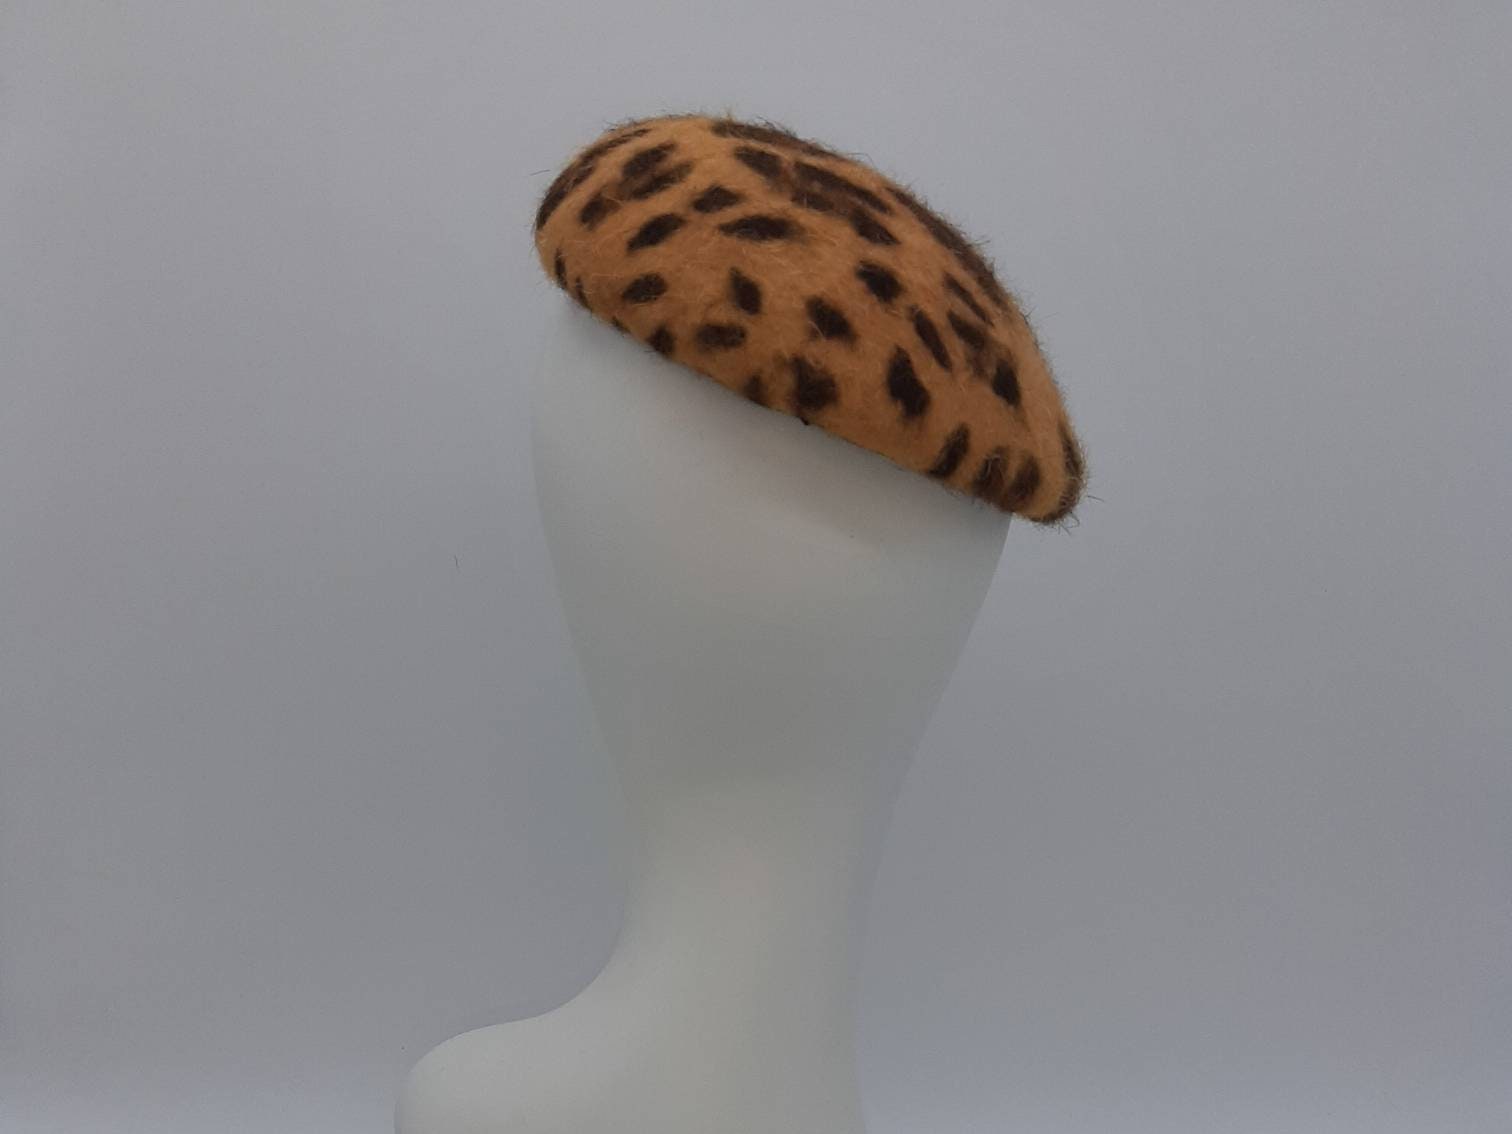 Leopard hat